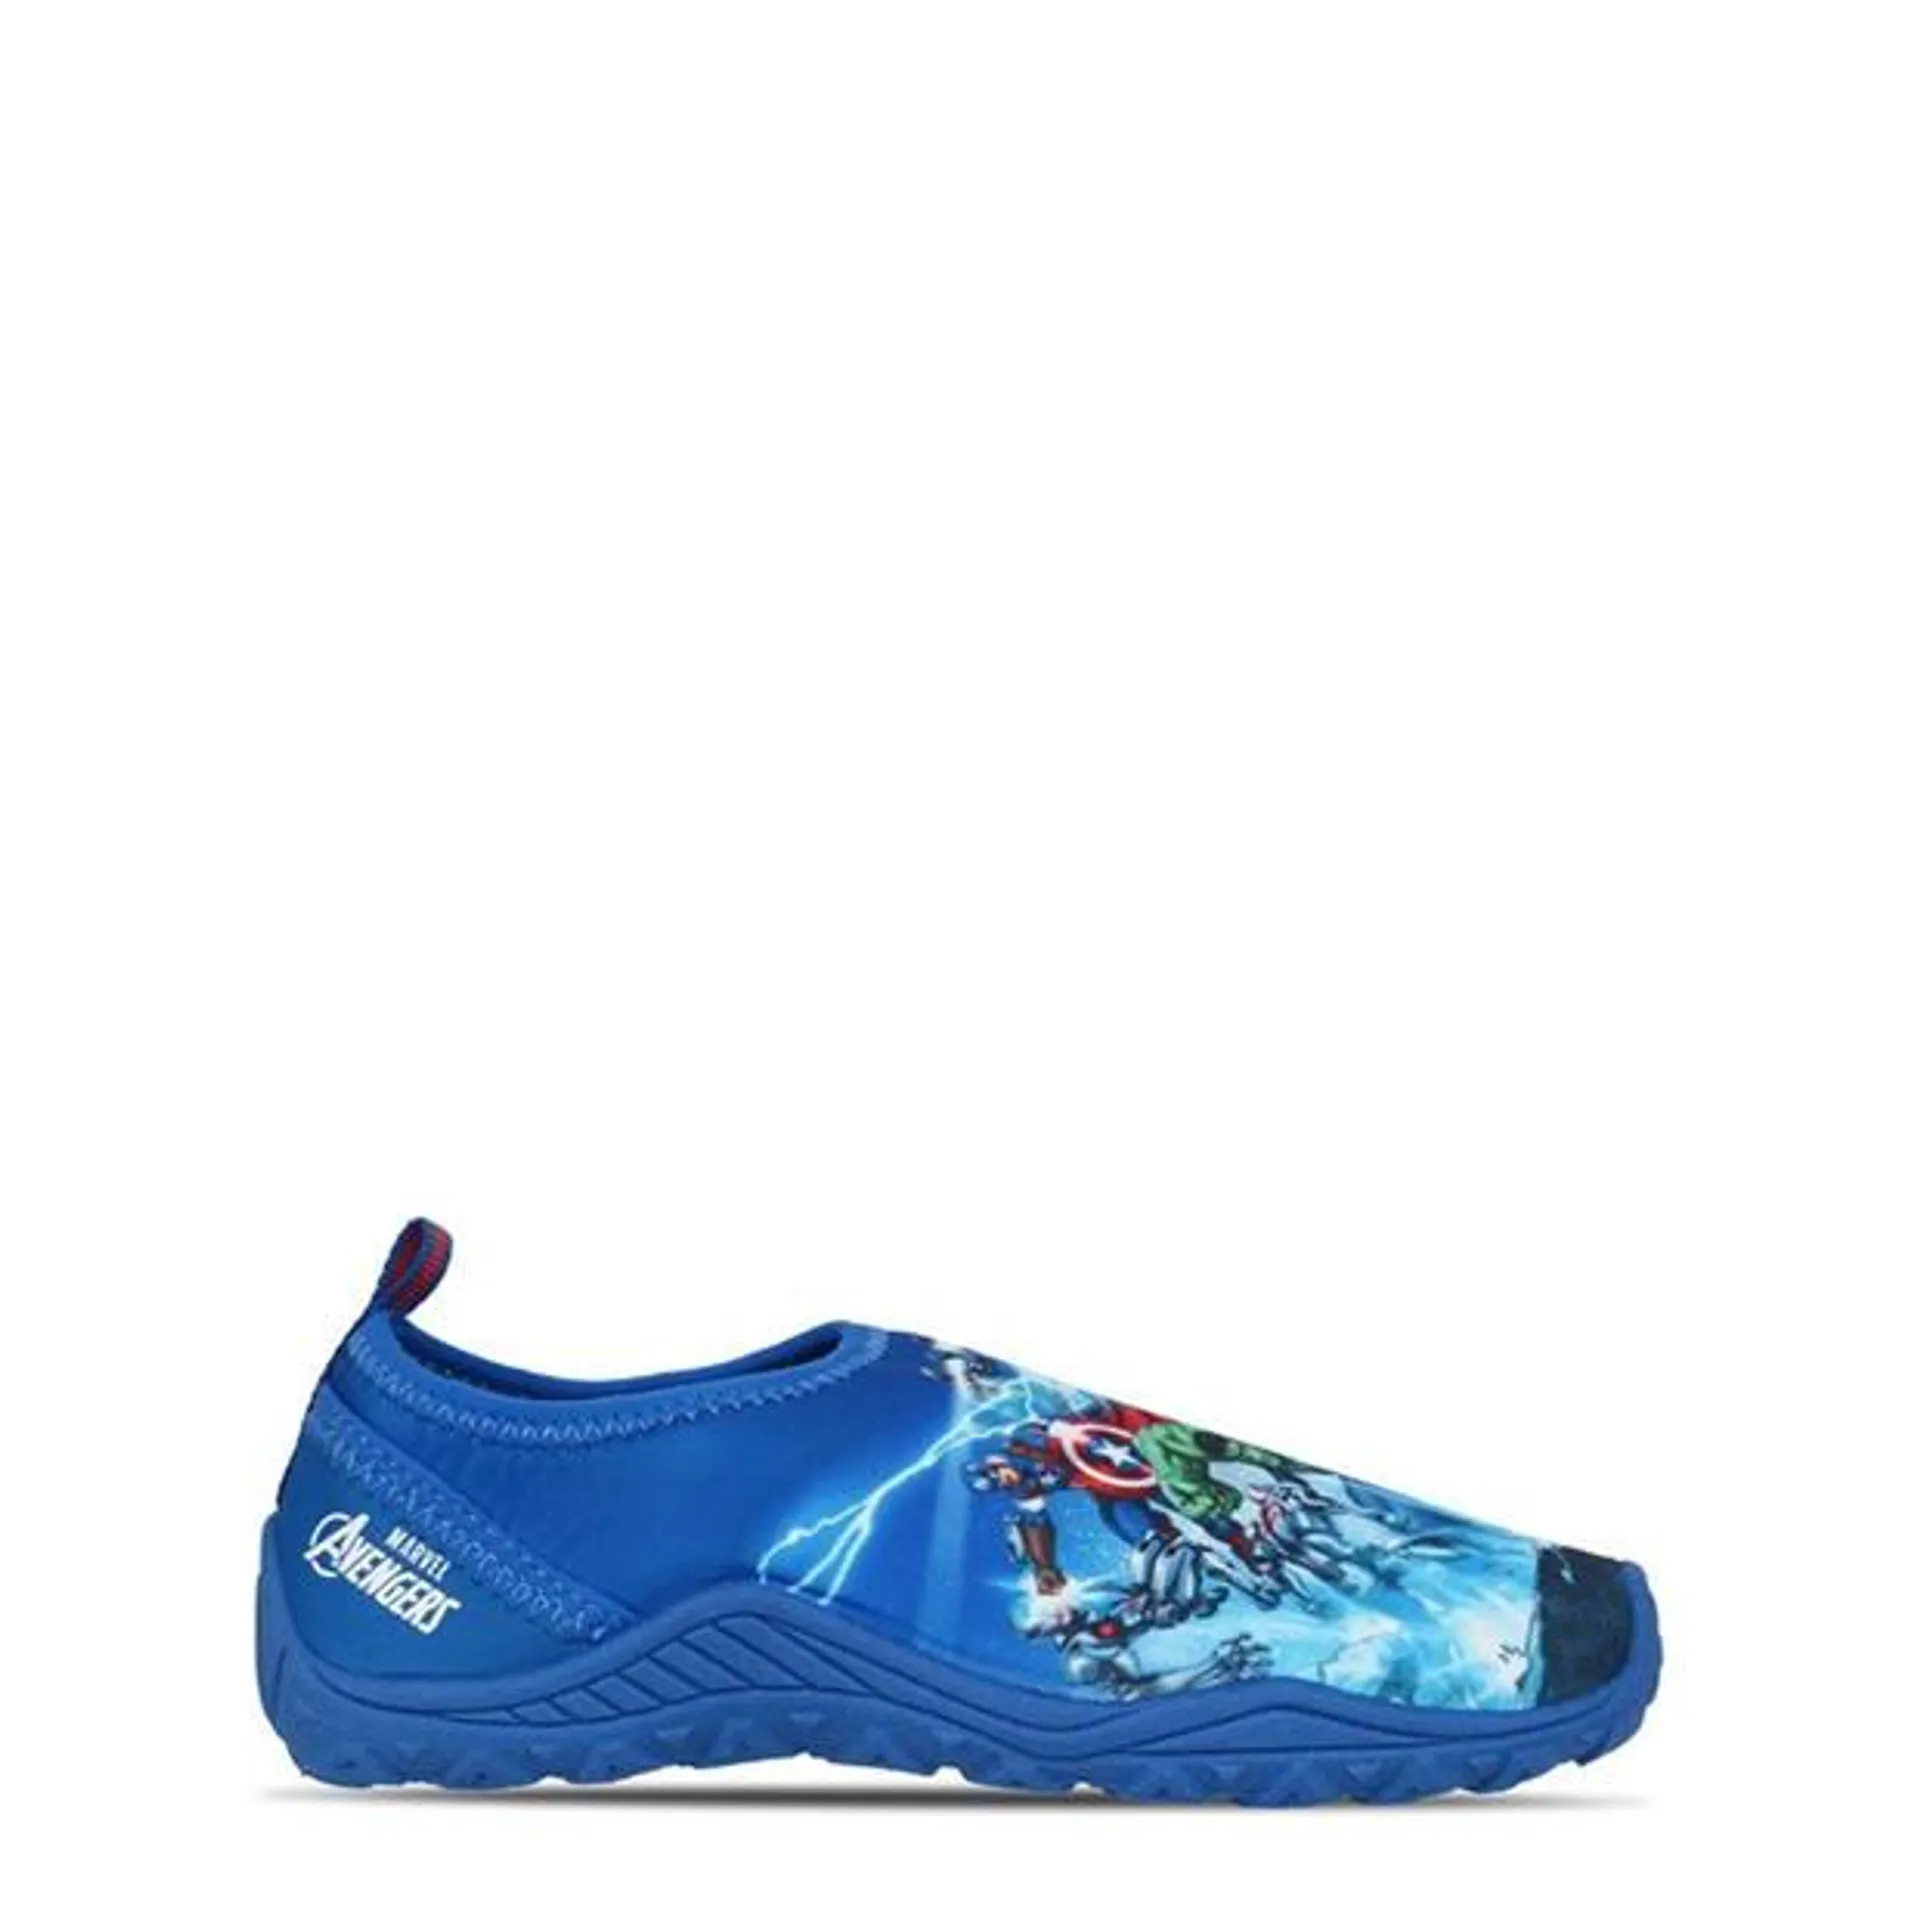 Aqua Childrens Water Shoes